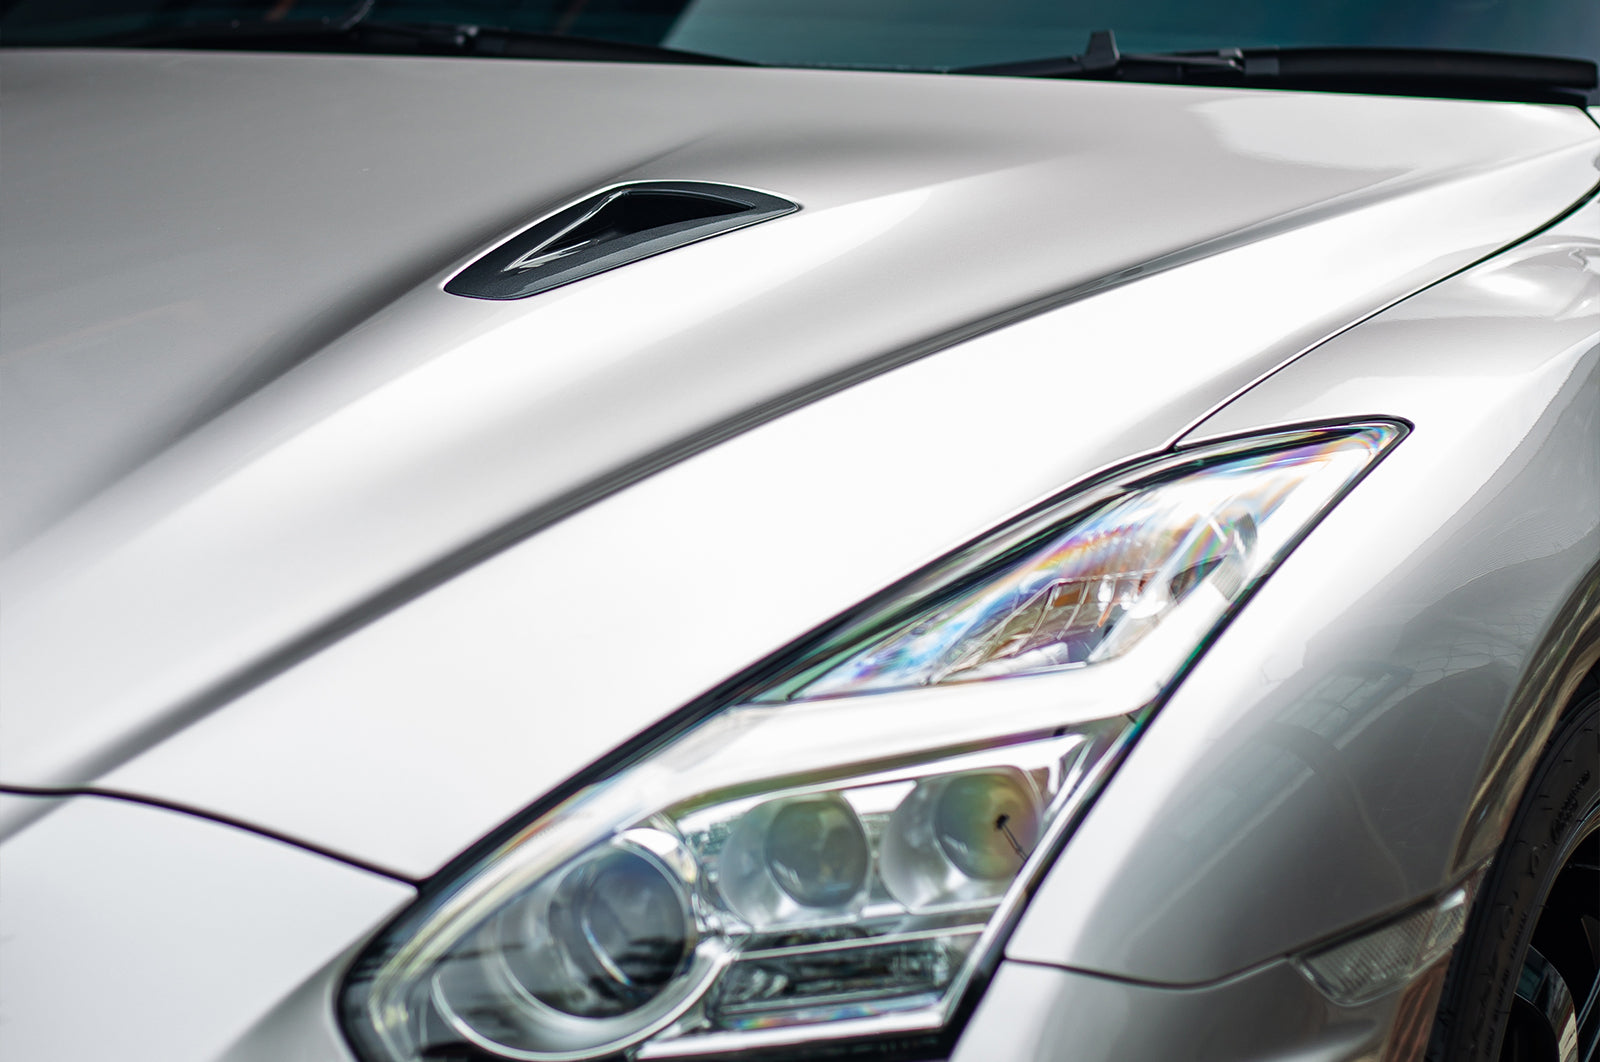 Nissan GTR – Supergloss Metallic Silver